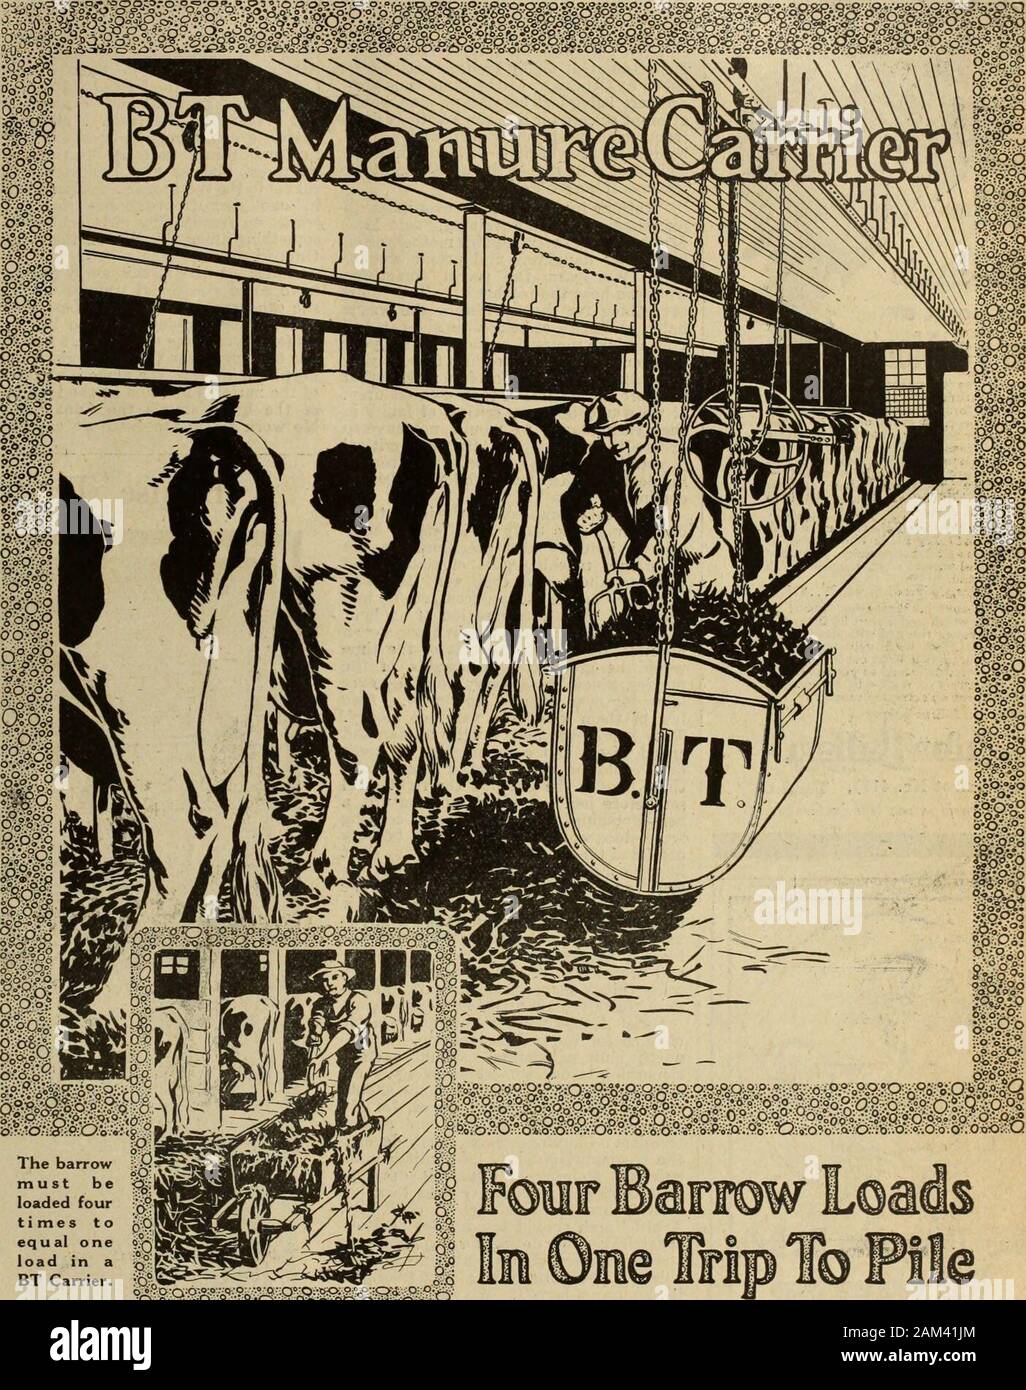 Farmer's Magazine (enero-diciembre de . ddie de la pradera, de W. Marsh. Los ancianos vacas numerados 9, un buen espectáculo, especialmente los tops.Mildred 2d de Les Godaines fui